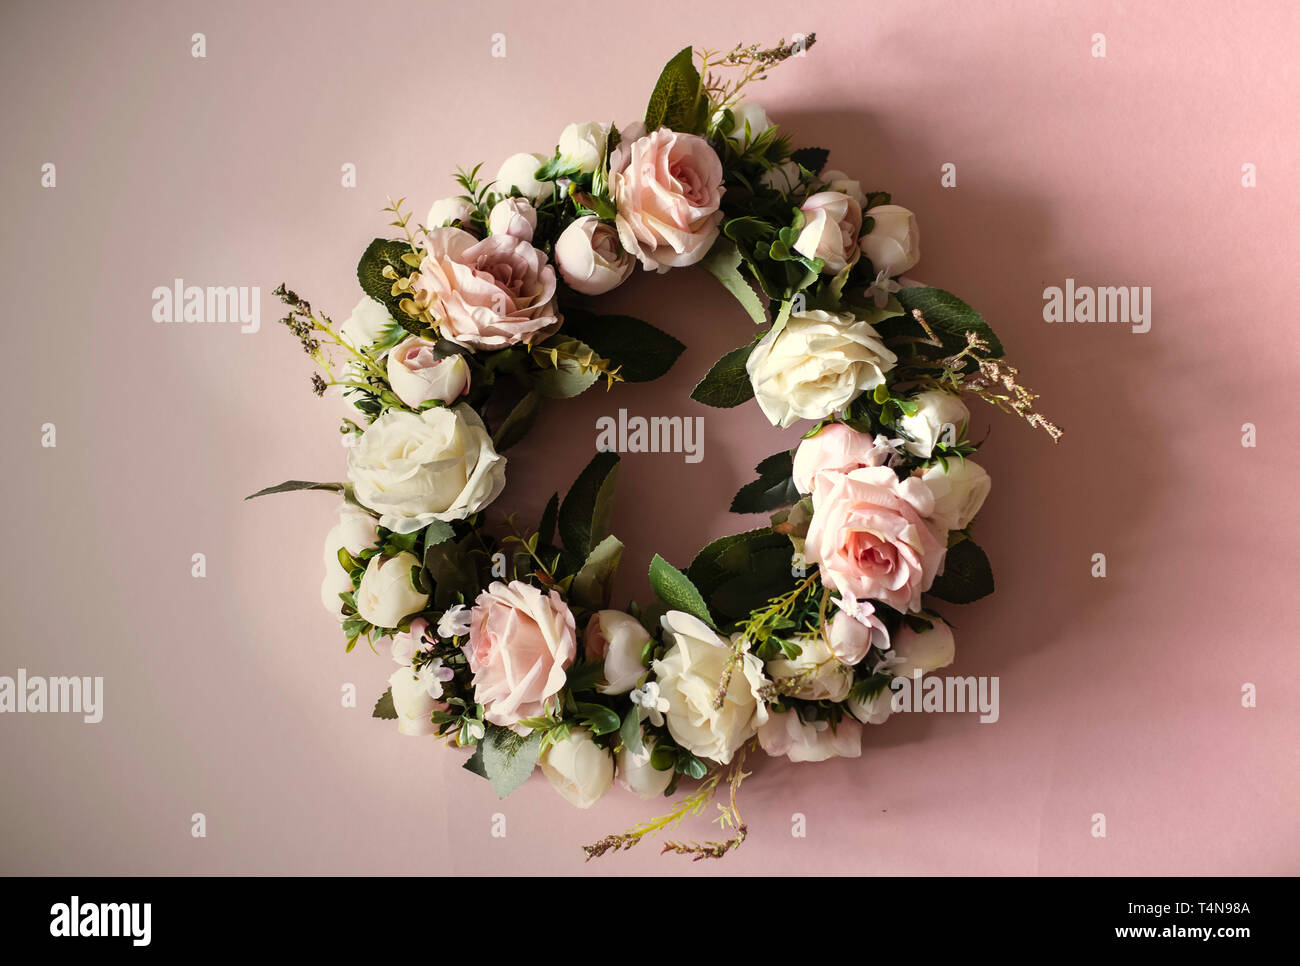 Kranz von rosa und weißen Rosen, grüne Blätter, Zusammensetzung rosa Blumen und grüne Blätter formen kreisförmige Rahmen auf rosa Hintergrund, Flach, Overhead Stockfoto